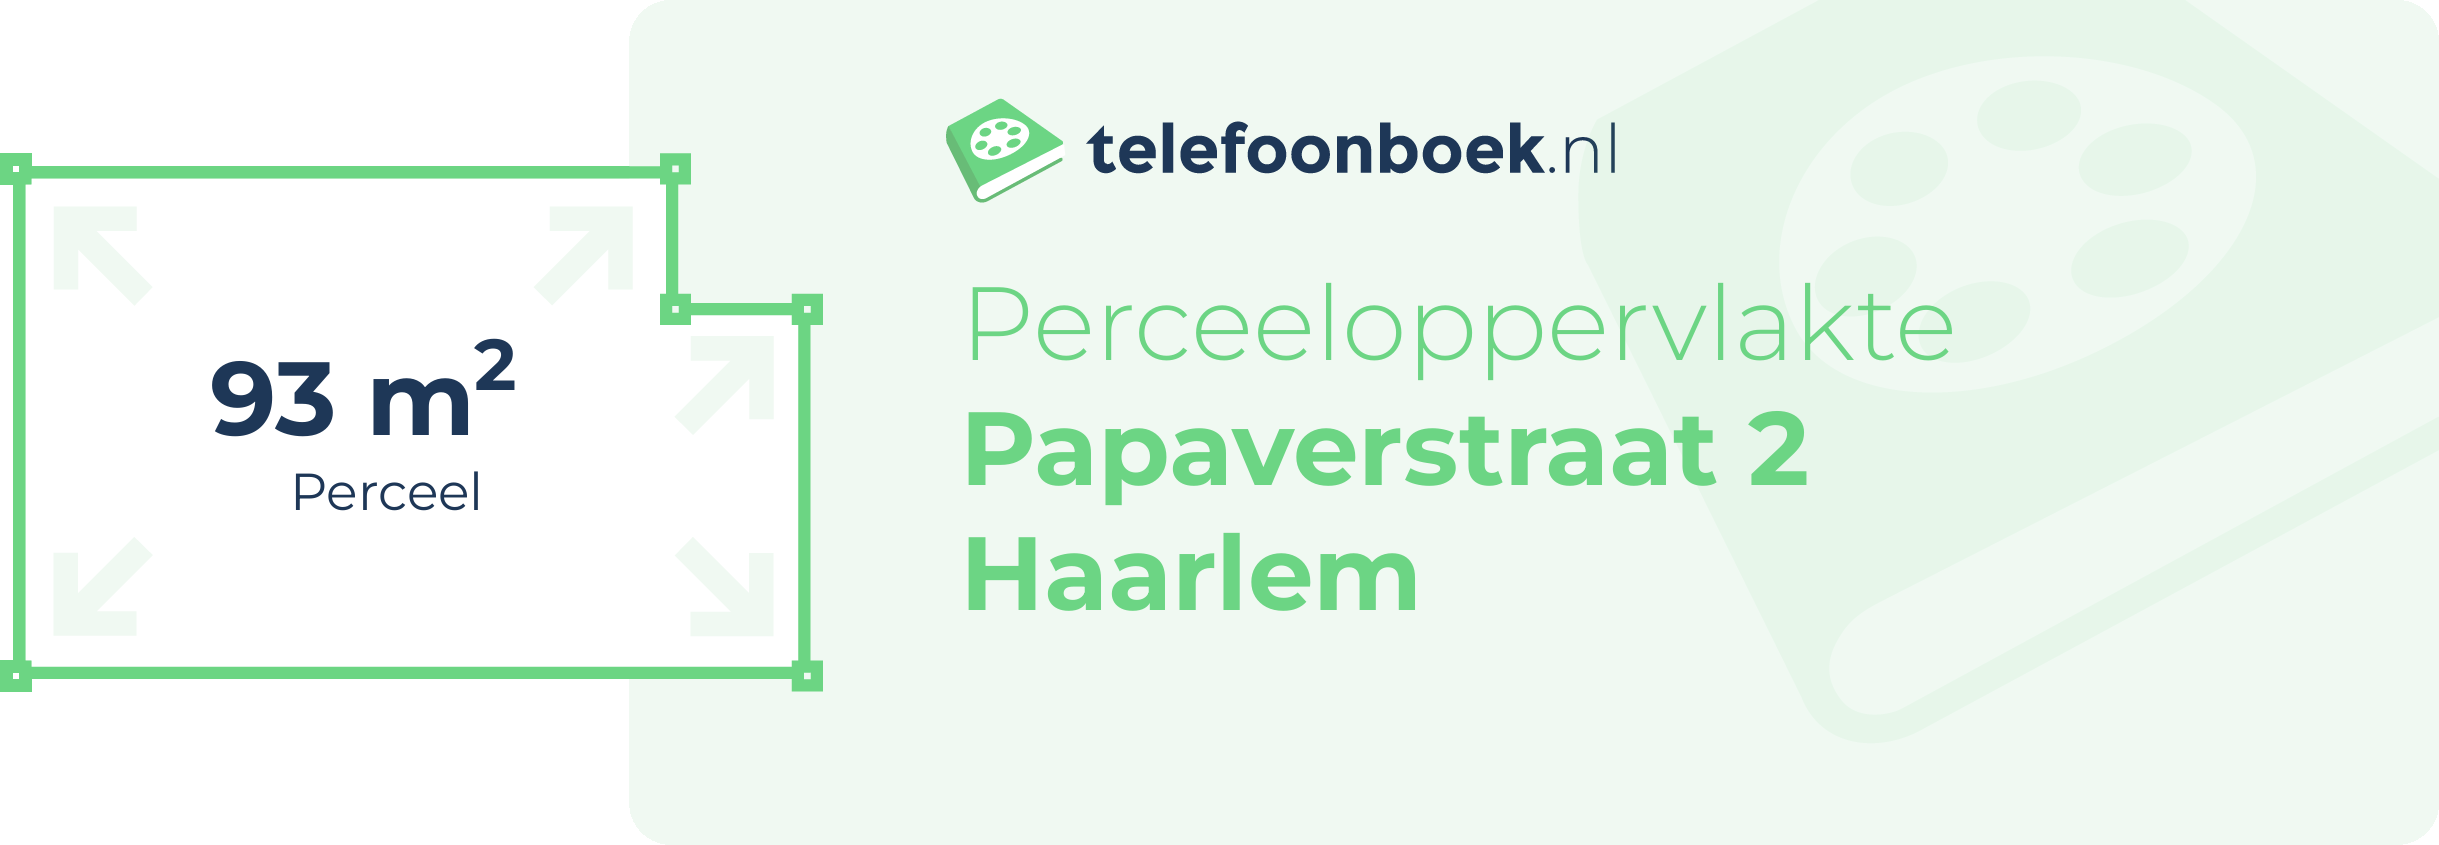 Perceeloppervlakte Papaverstraat 2 Haarlem